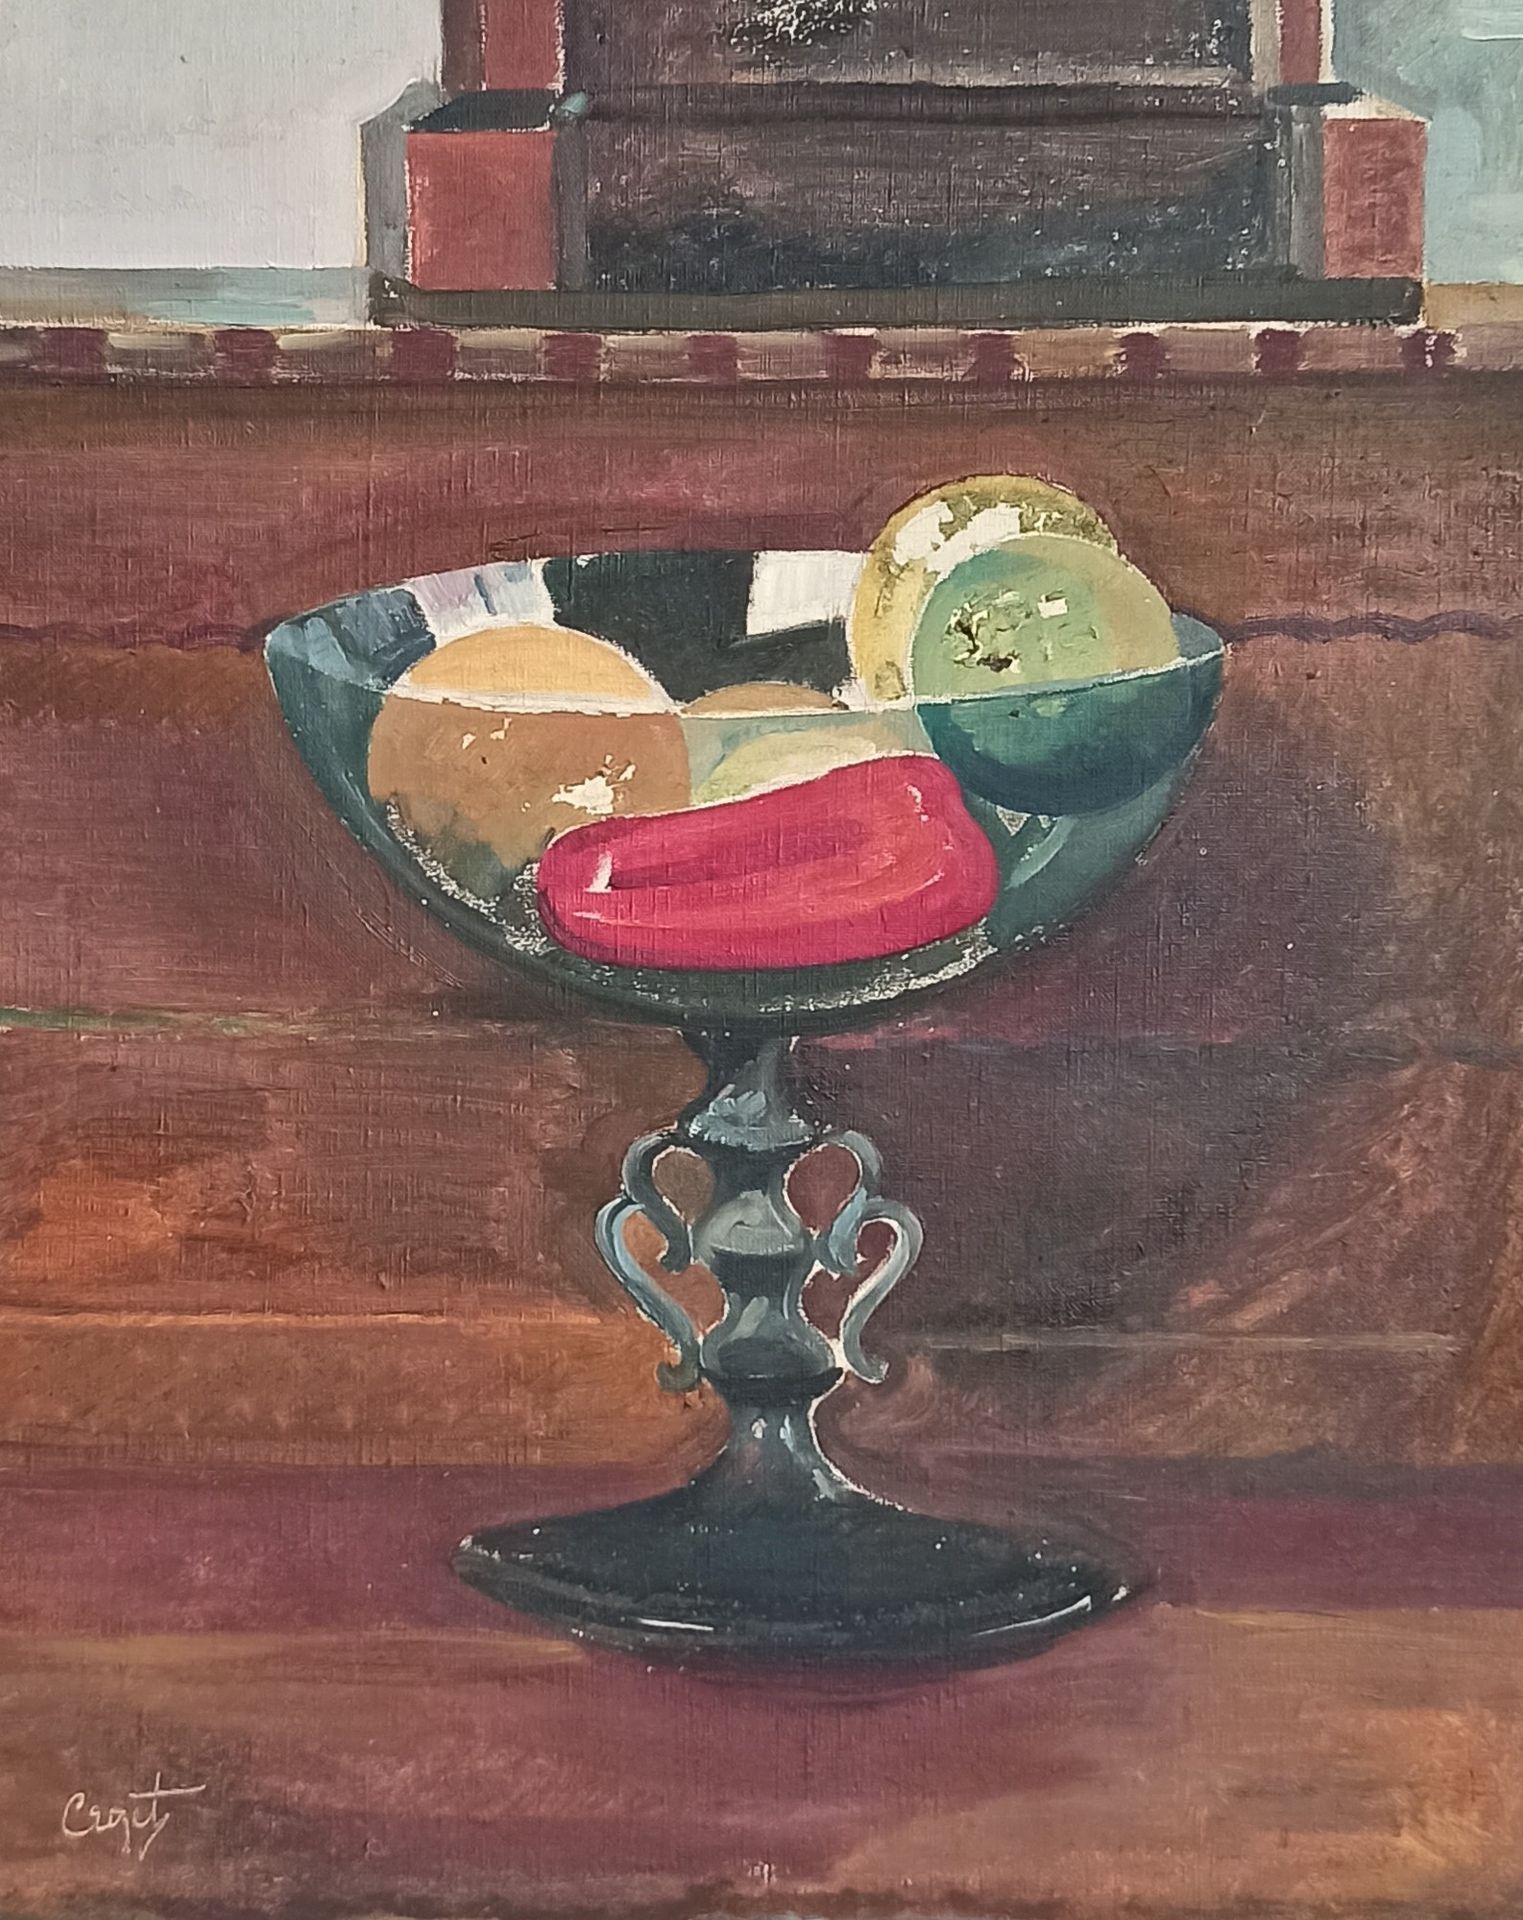 Null 莫里斯-克罗泽 (1896-1978)

威尼斯的玻璃杯静物画

布面油画。

左下方有签名。

61 x 50厘米

失误和提升